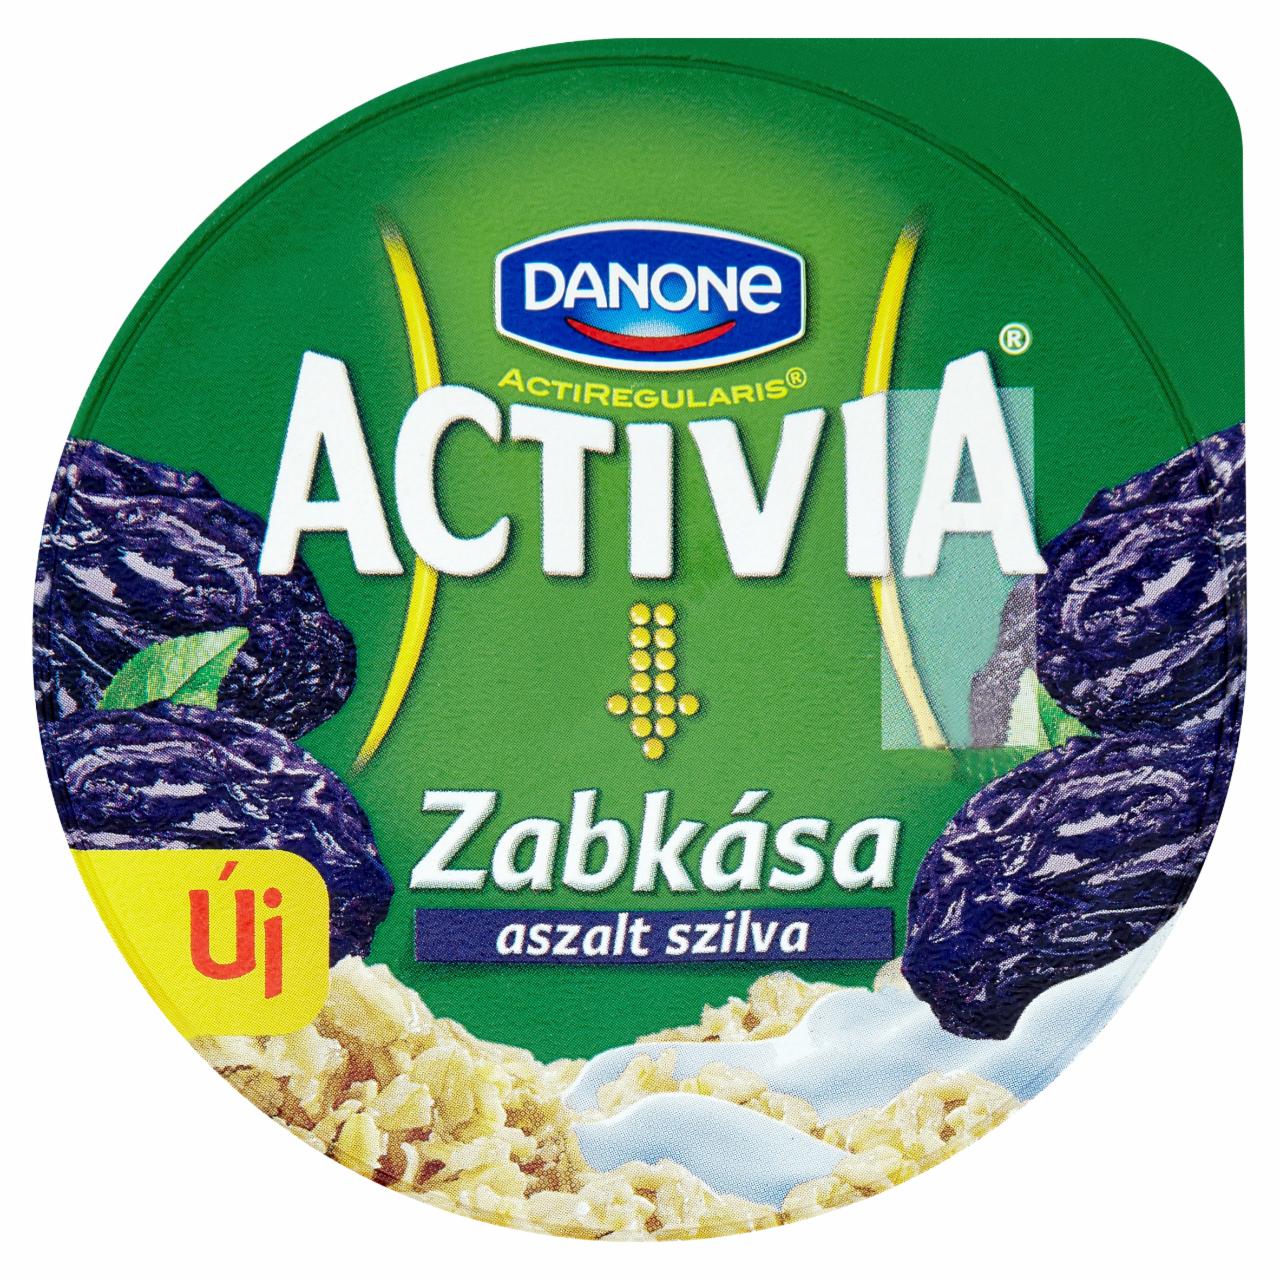 Képek - Danone Activia Zabkása aszalt szilva ízű joghurt 190 g